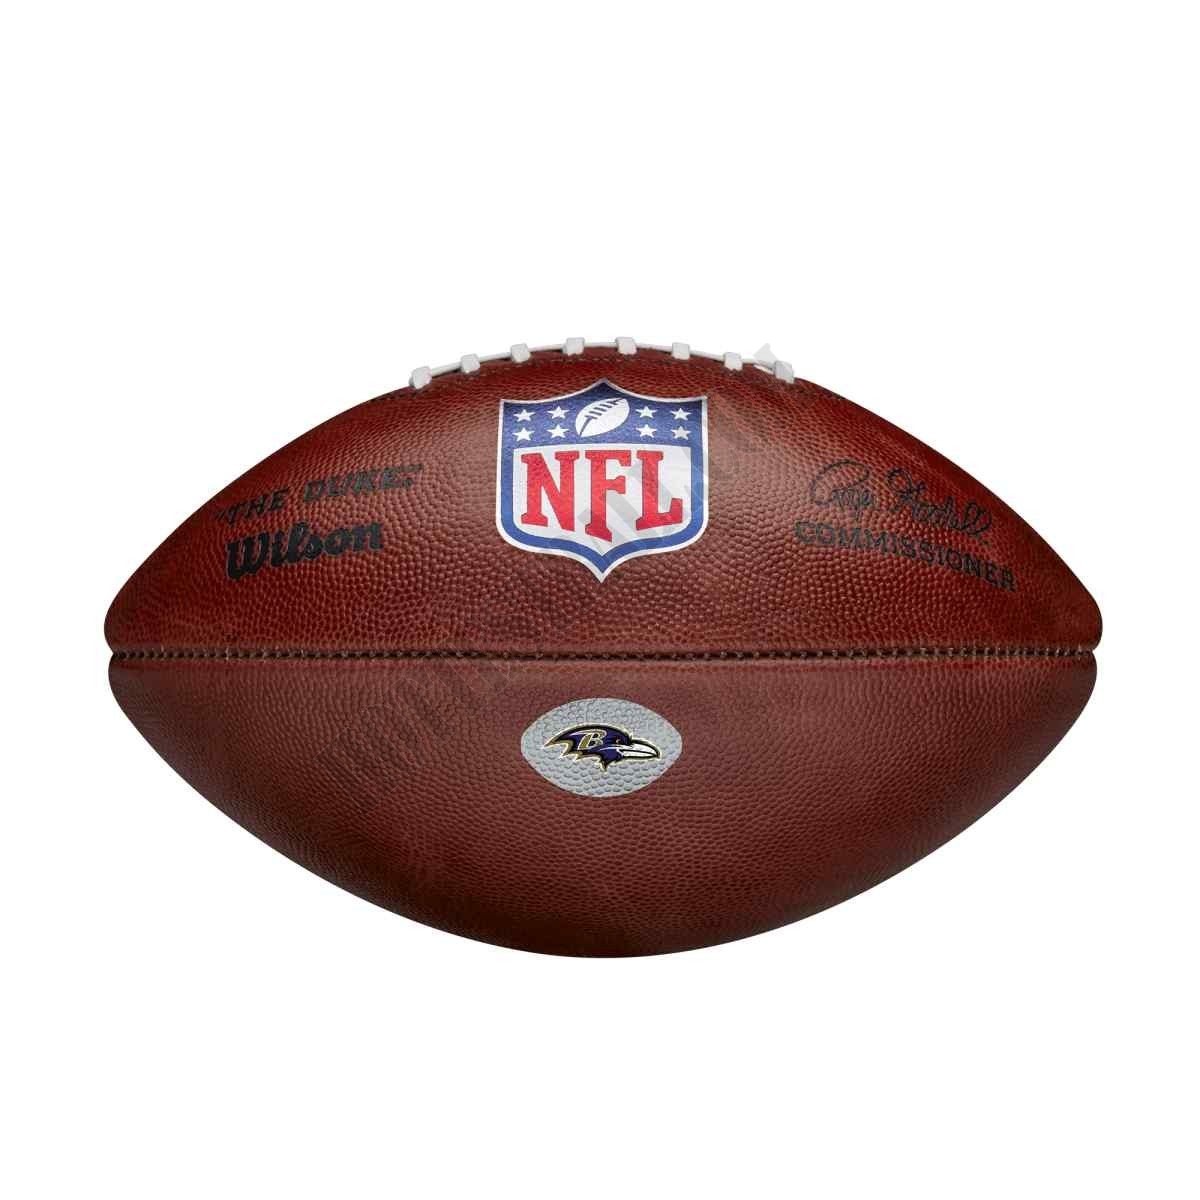 The Duke Decal NFL Football - Baltimore Ravens ● Wilson Promotions - The Duke Decal NFL Football - Baltimore Ravens ● Wilson Promotions